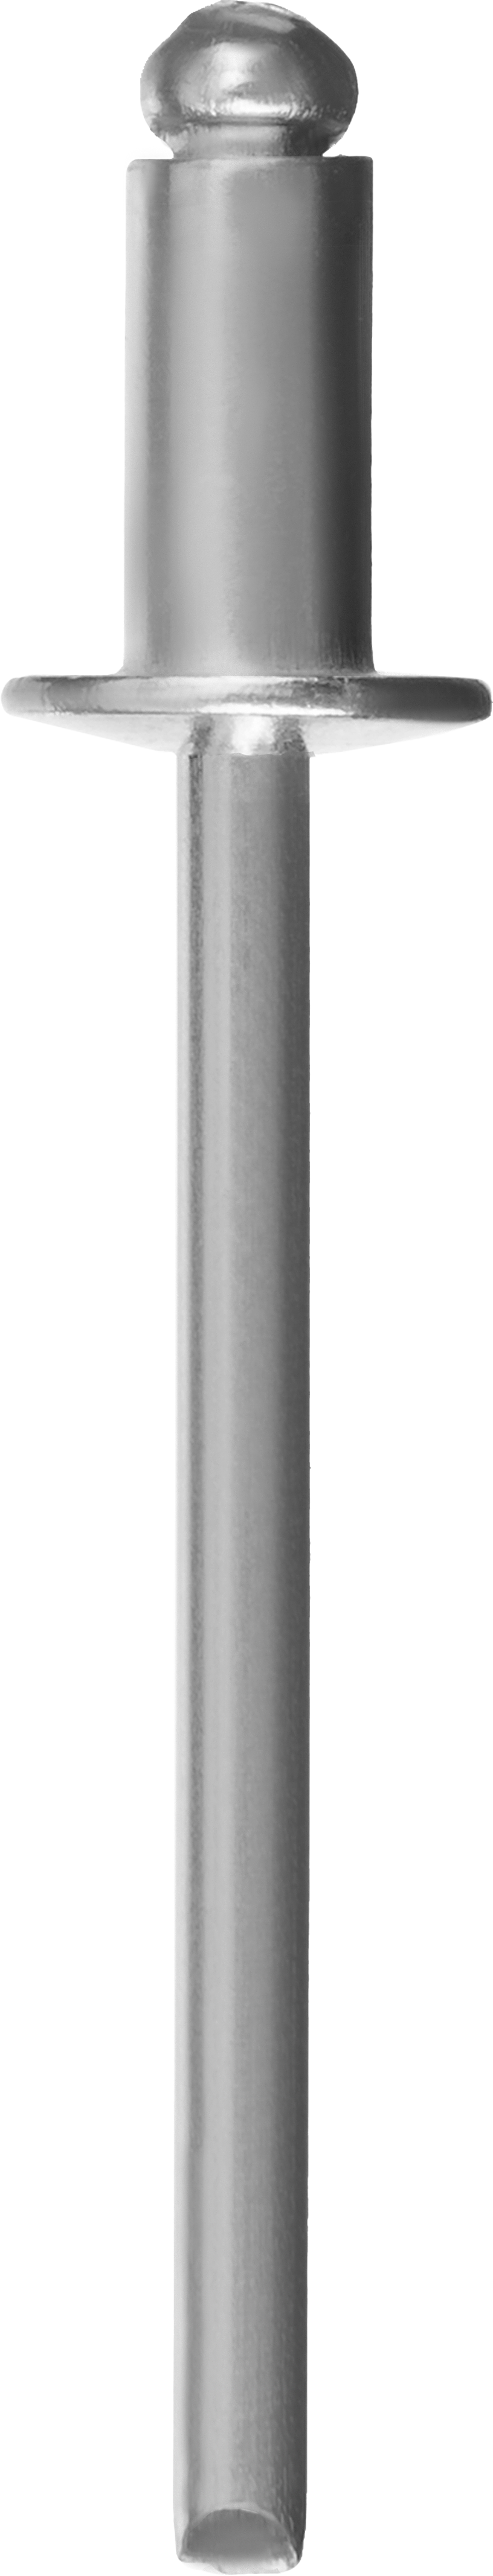 Заклепки вытяжные Зубр Профессионал, ⌀ 4.8 мм длина гильзы 21 мм, алюминий, 250 шт. (31310-48-21)